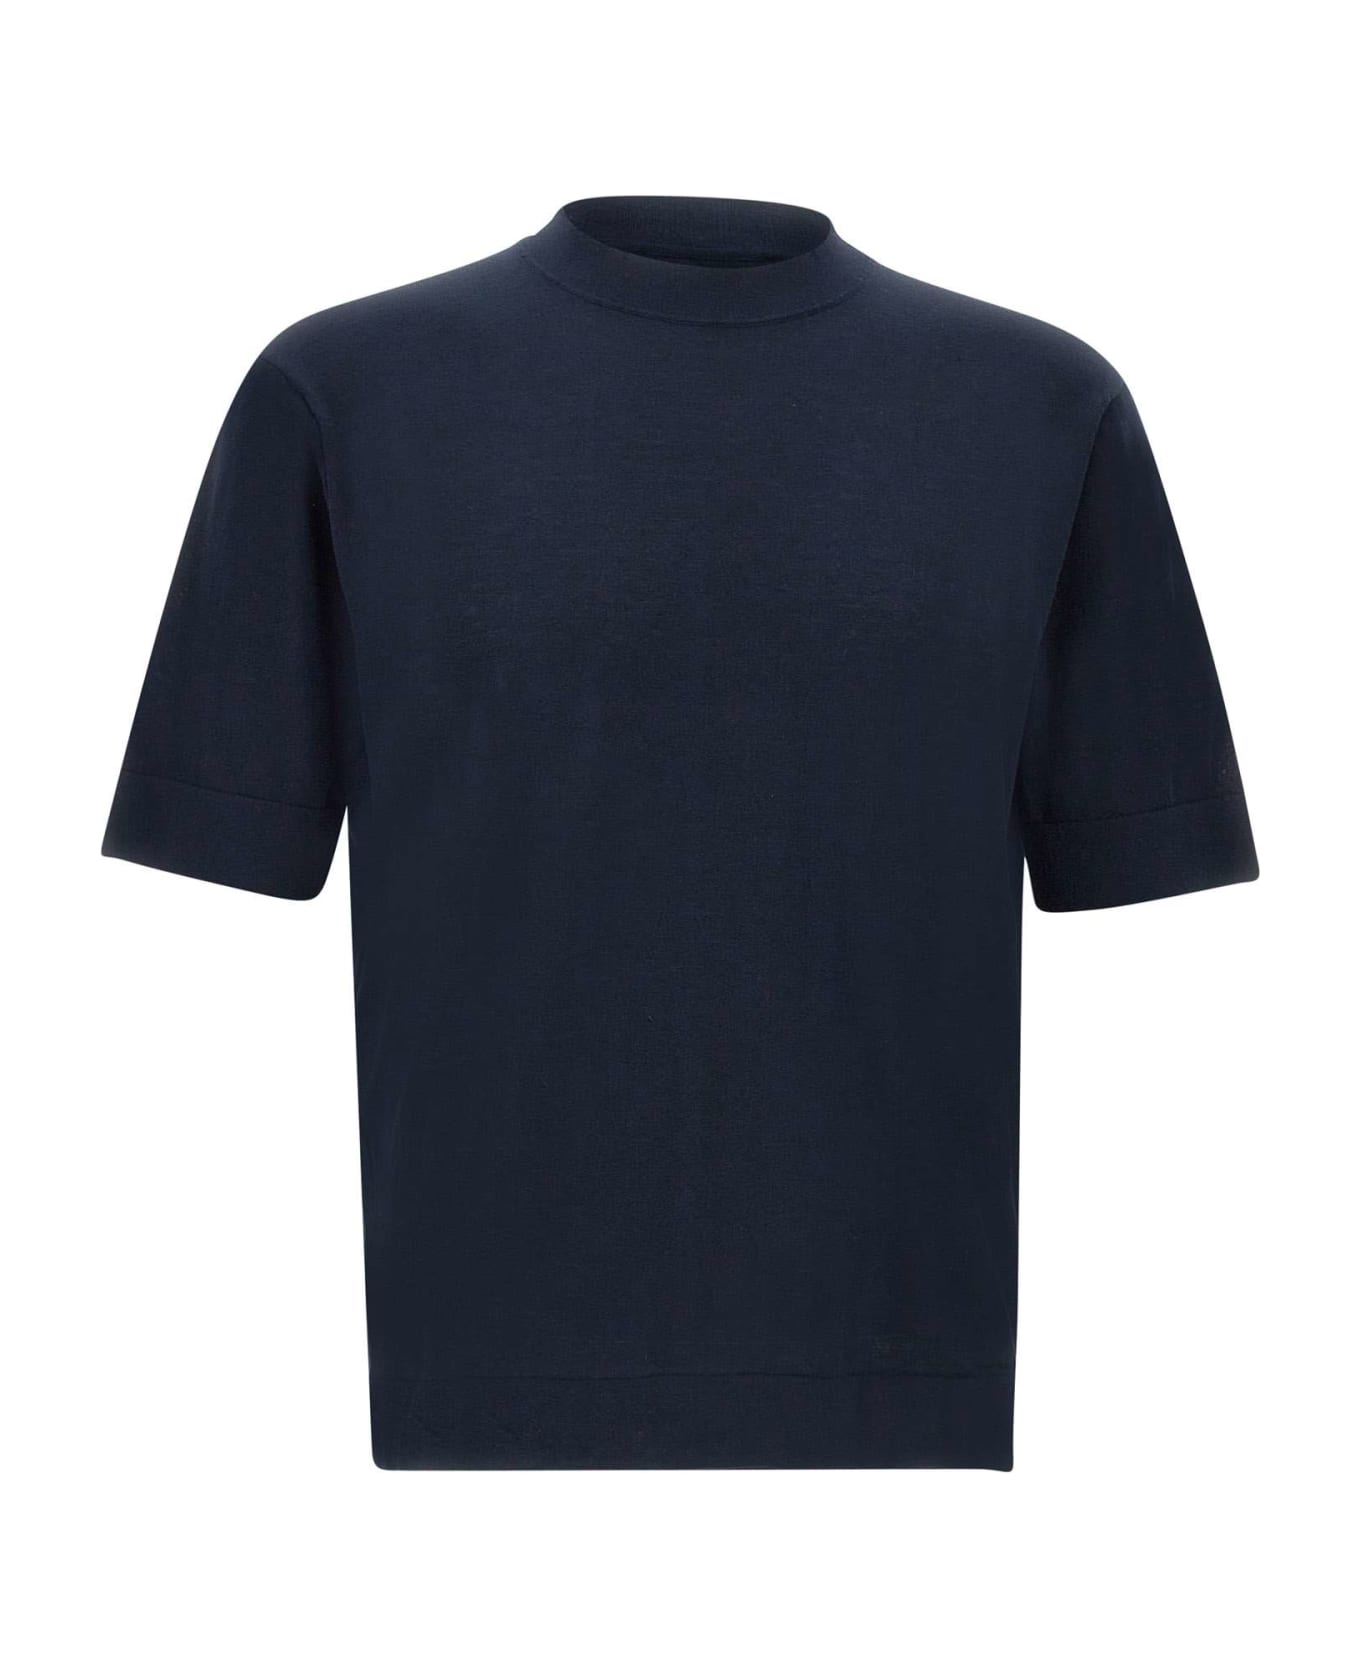 Filippo De Laurentiis "mc Over" Cotton Crepe T-shirt - BLUE